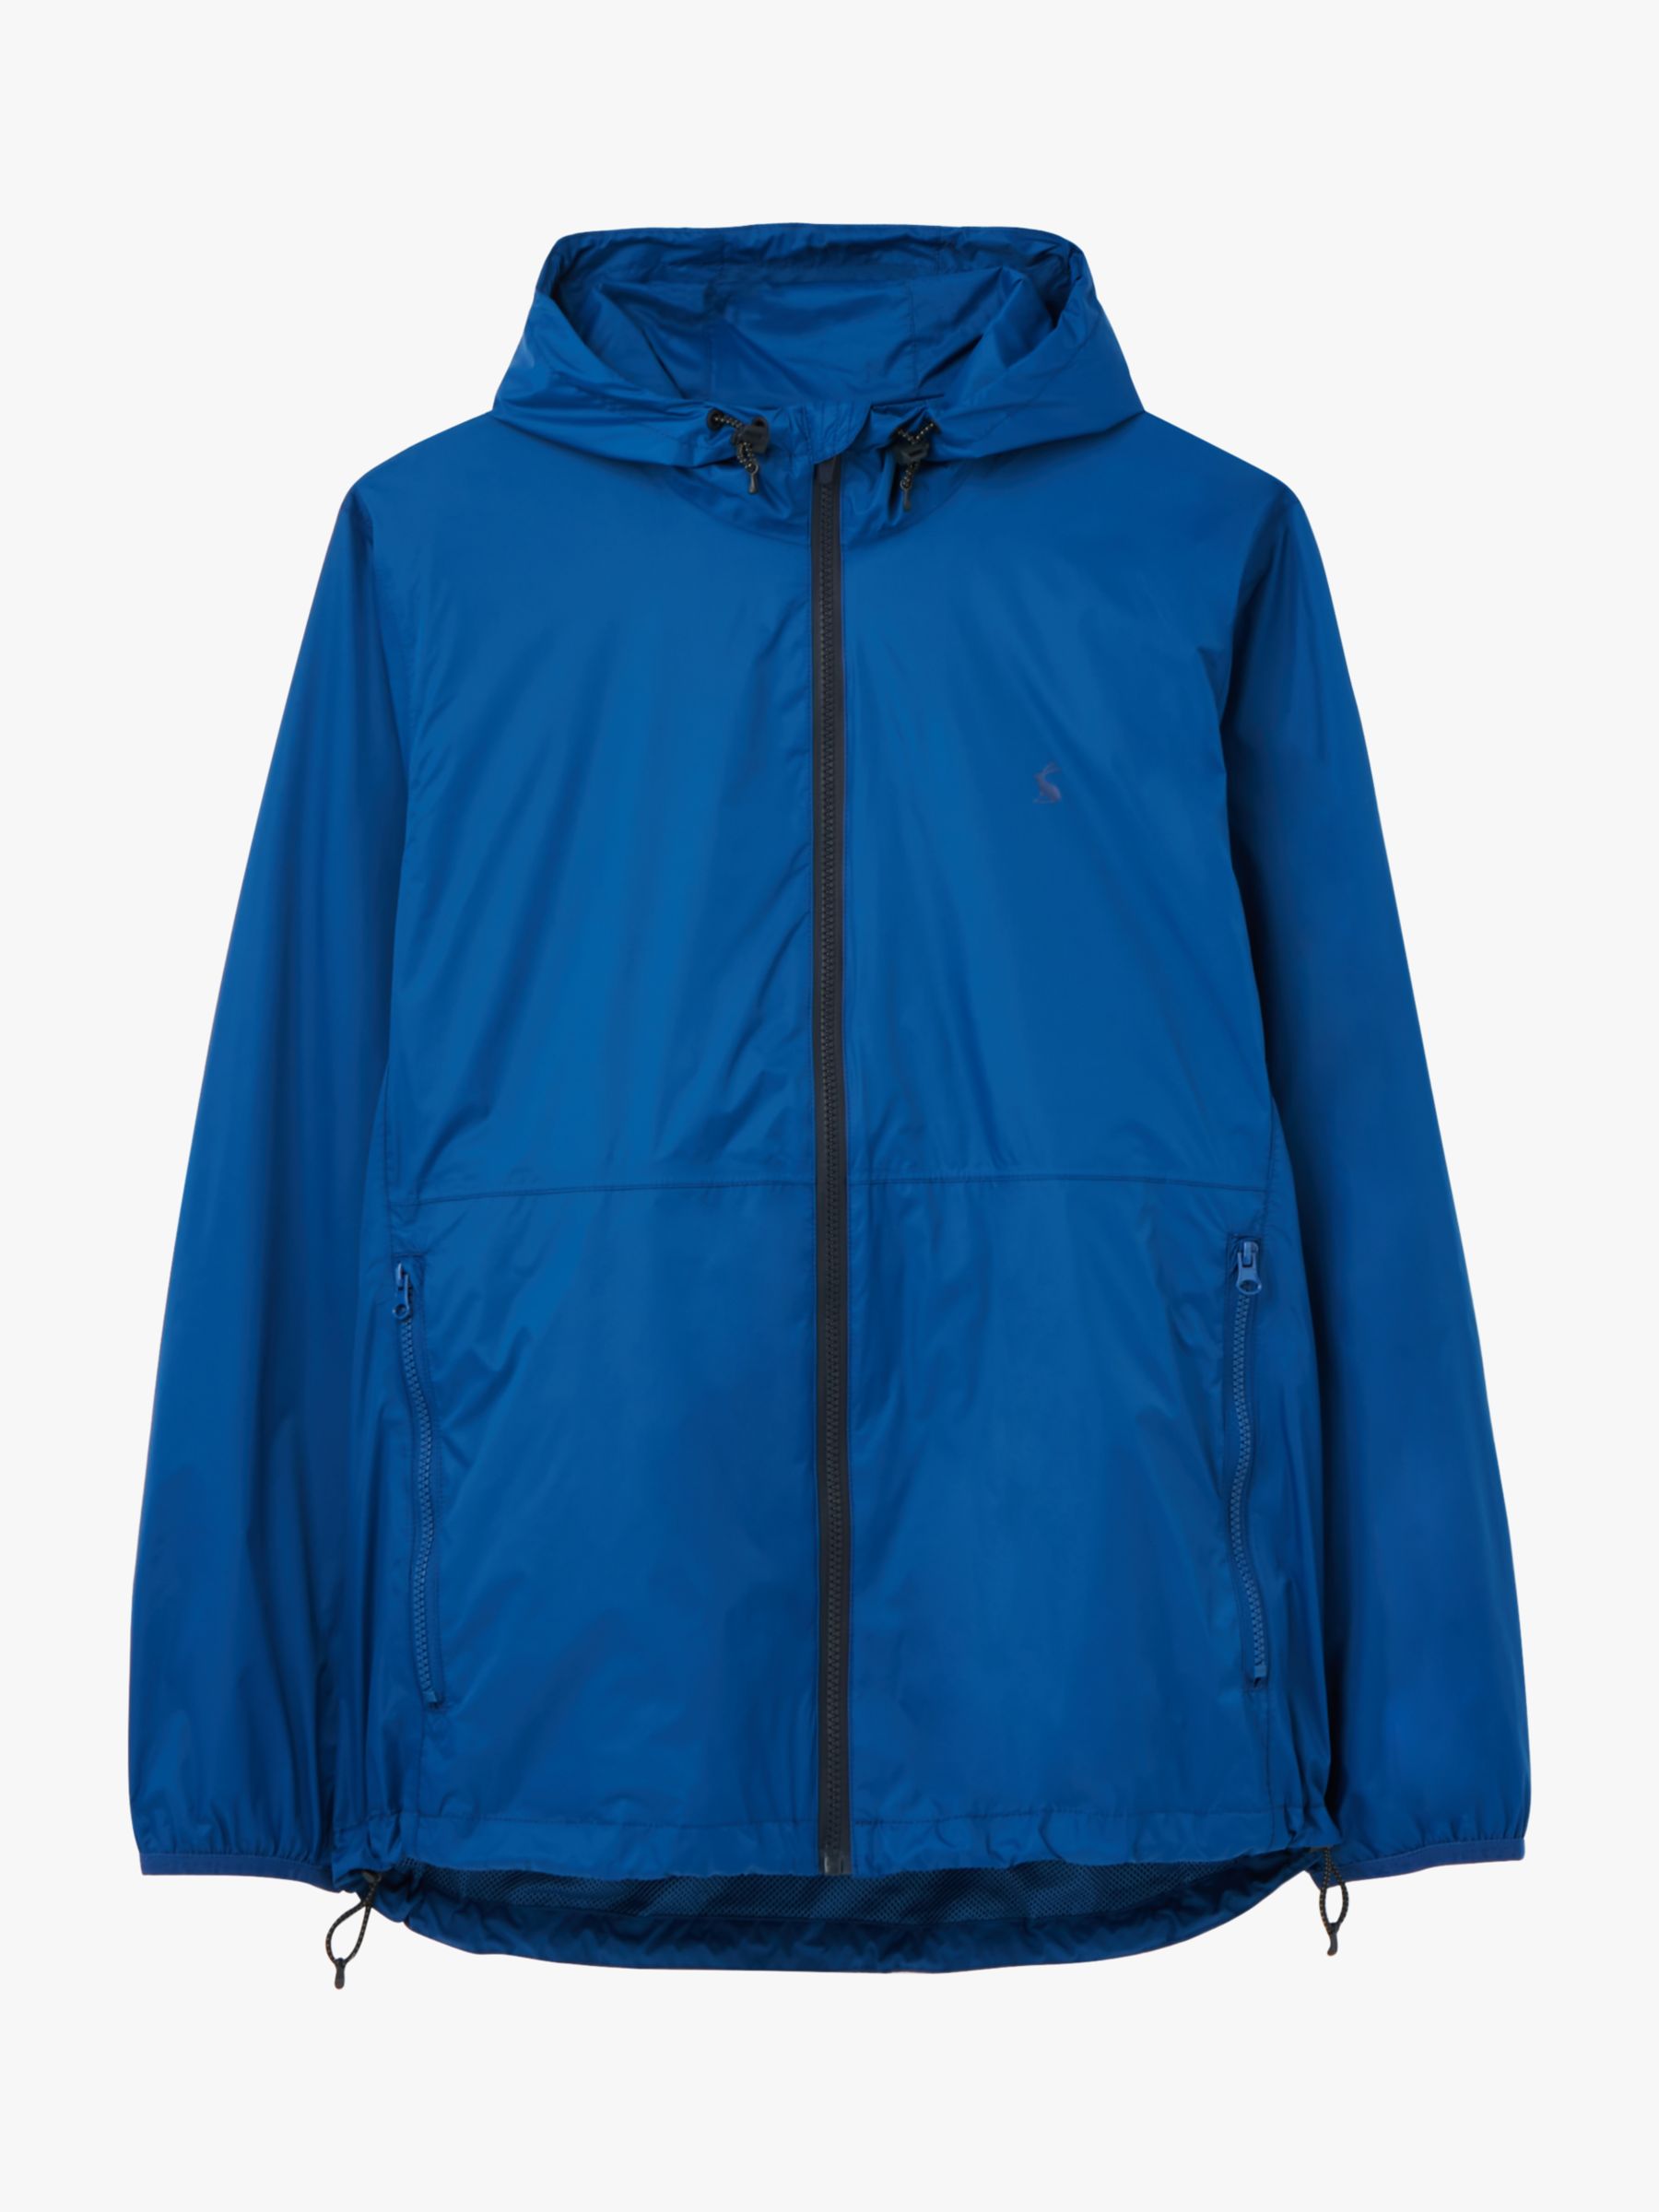 Joules Arlow Lightweight Waterproof Jacket, Blue at John Lewis & Partners